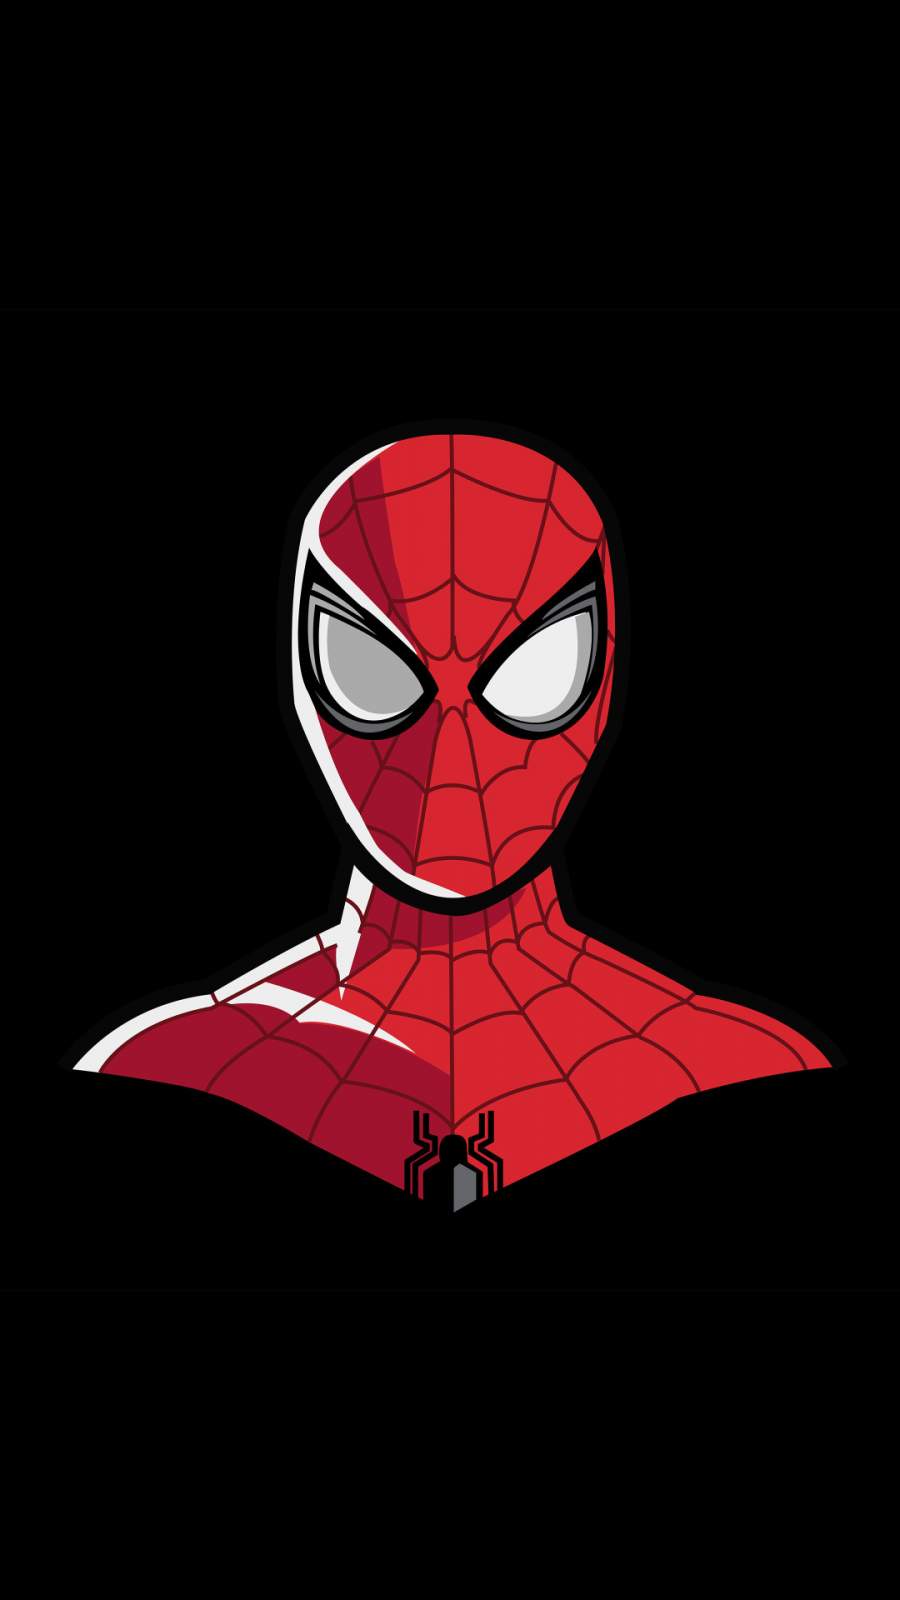 30+] Spider Man 4k iPhone Wallpapers - WallpaperSafari